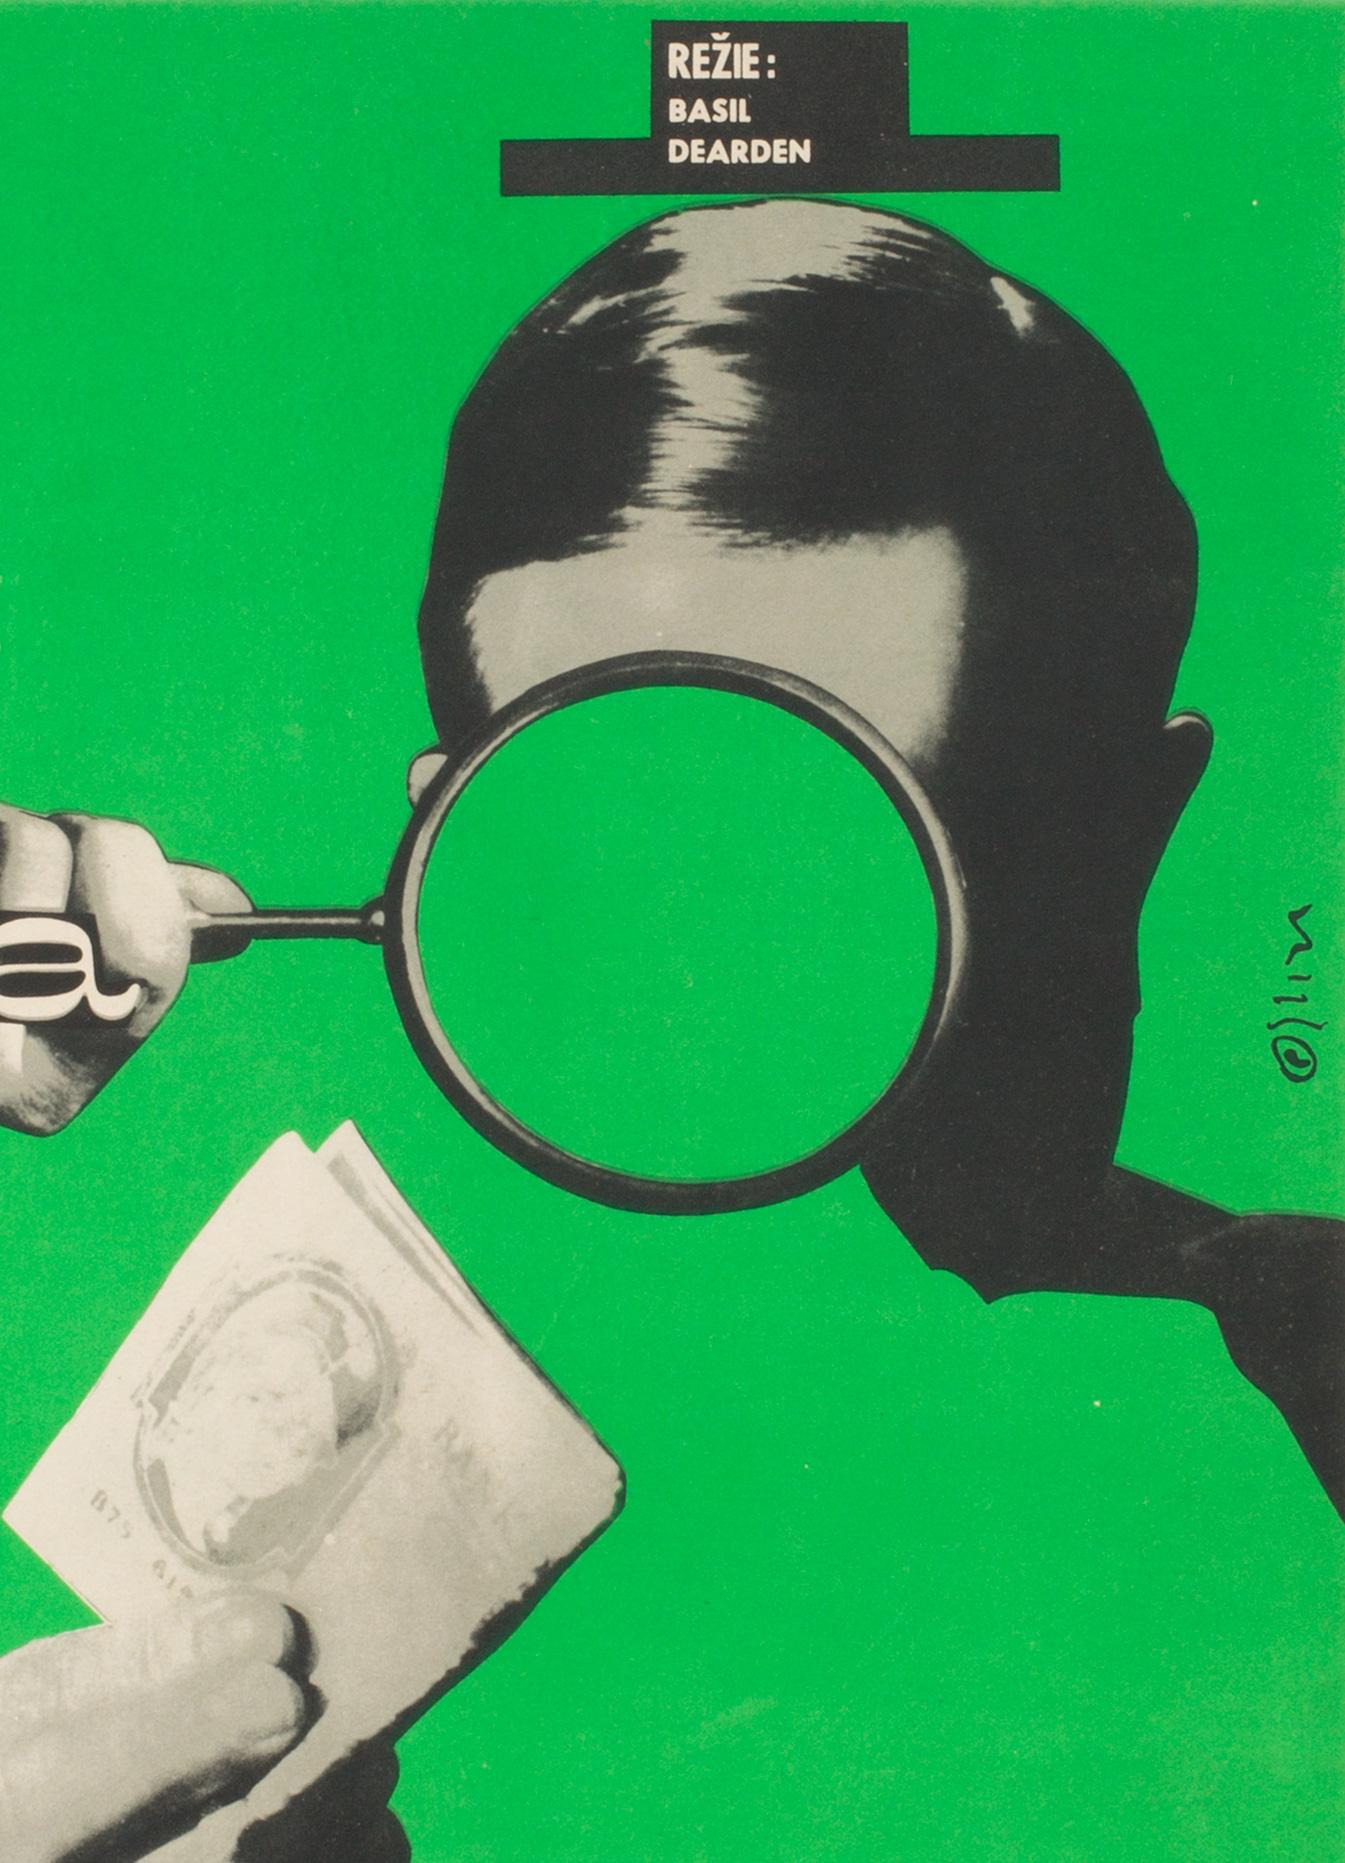 Paper League of Gentlemen Original Czech Film Poster Milan Grygar, 1964 For Sale